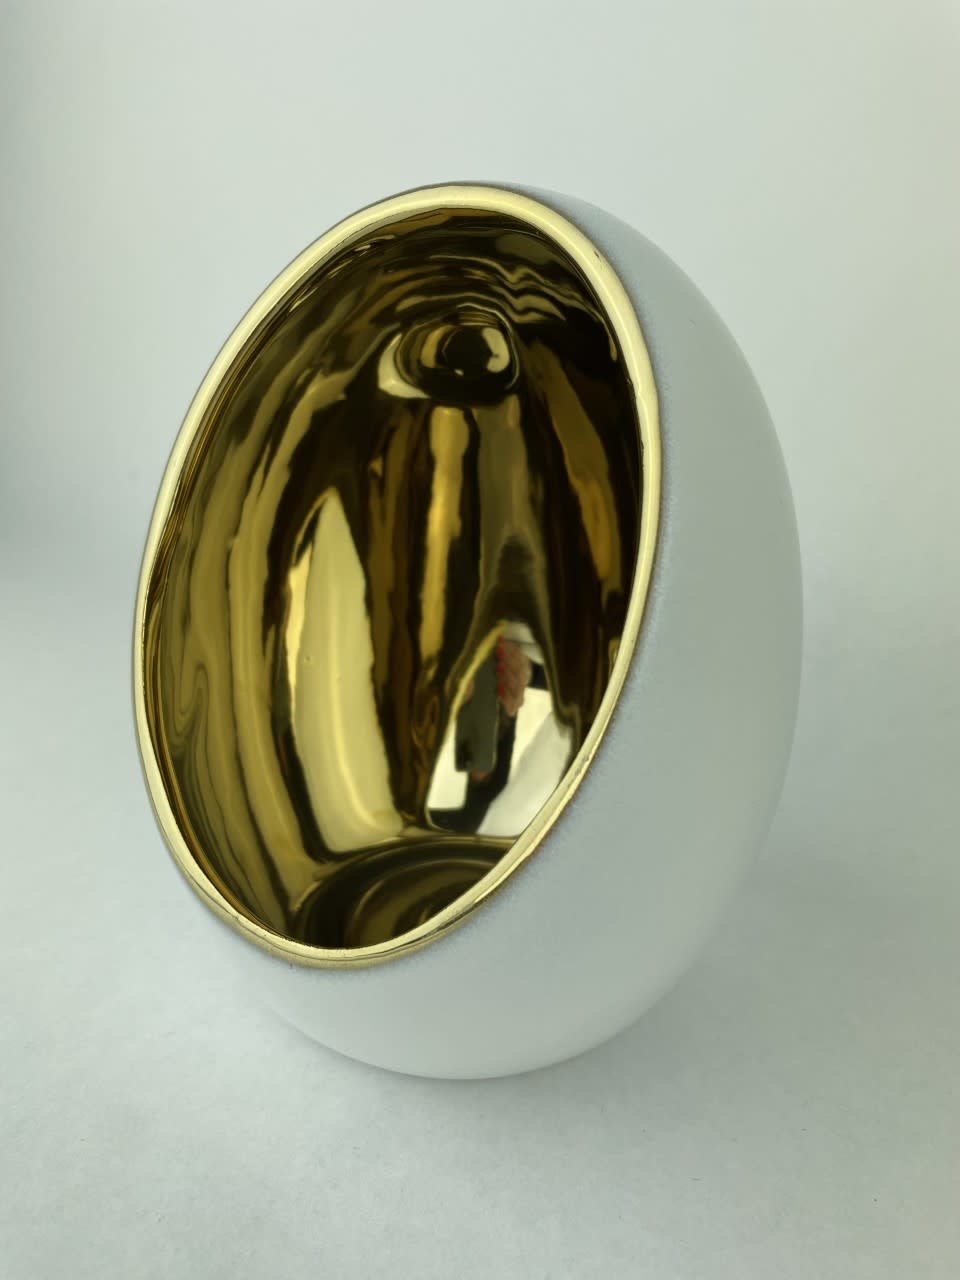 TL-holder "dali egg' ceramic 12Dx15H White Gold-1